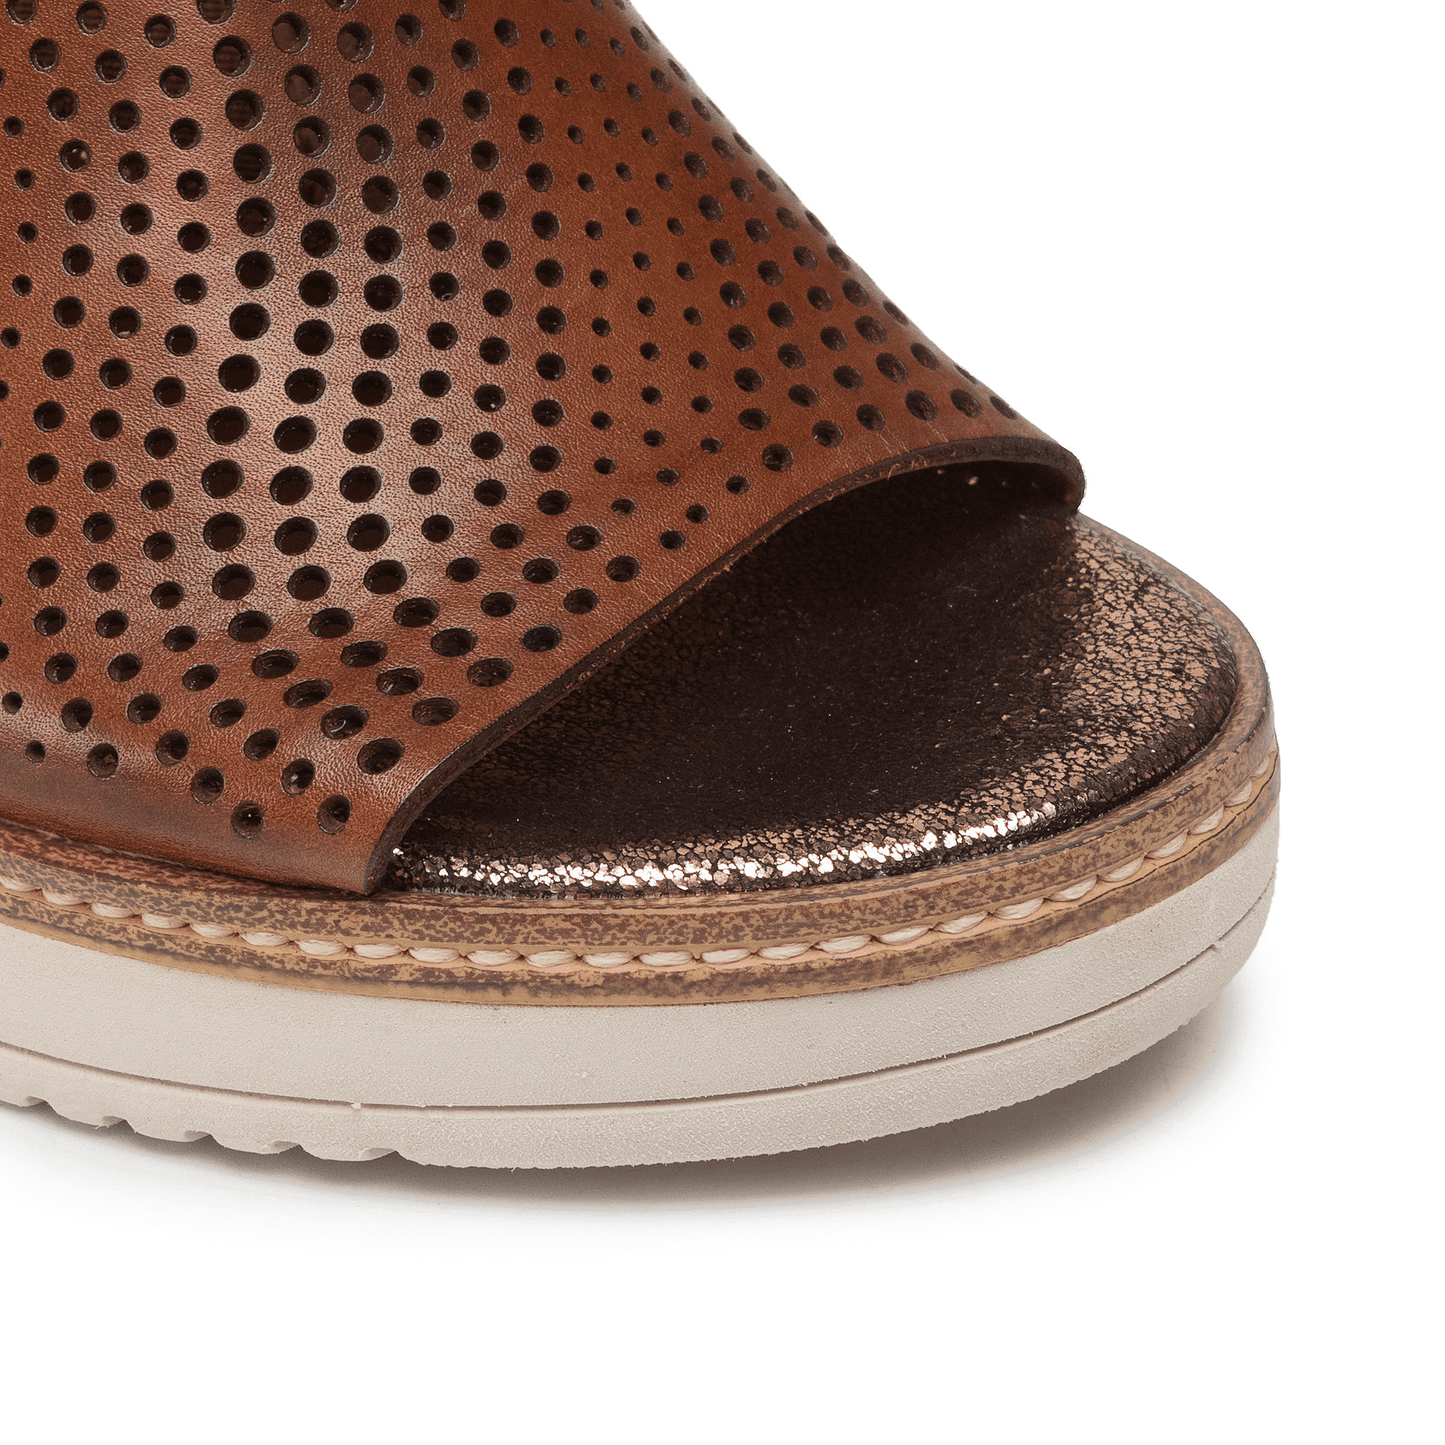 TAMARIS 1-28316-28 muscat sandalia media cuña nuez